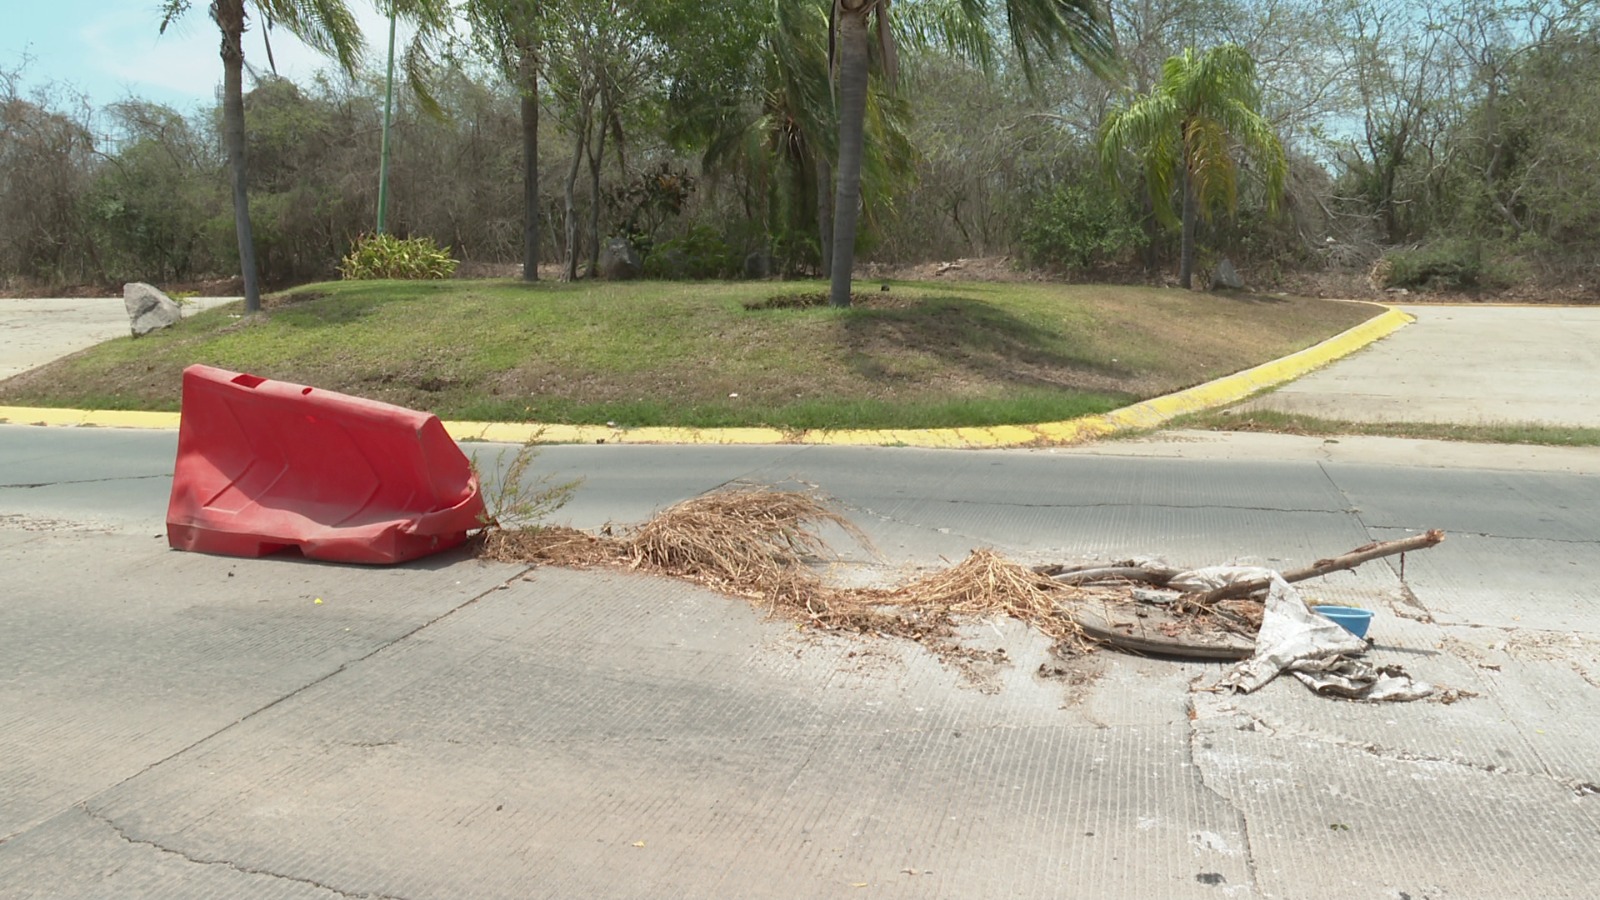 Levantamiento del suelo en Av. Altavela pone en peligro a automovilistas